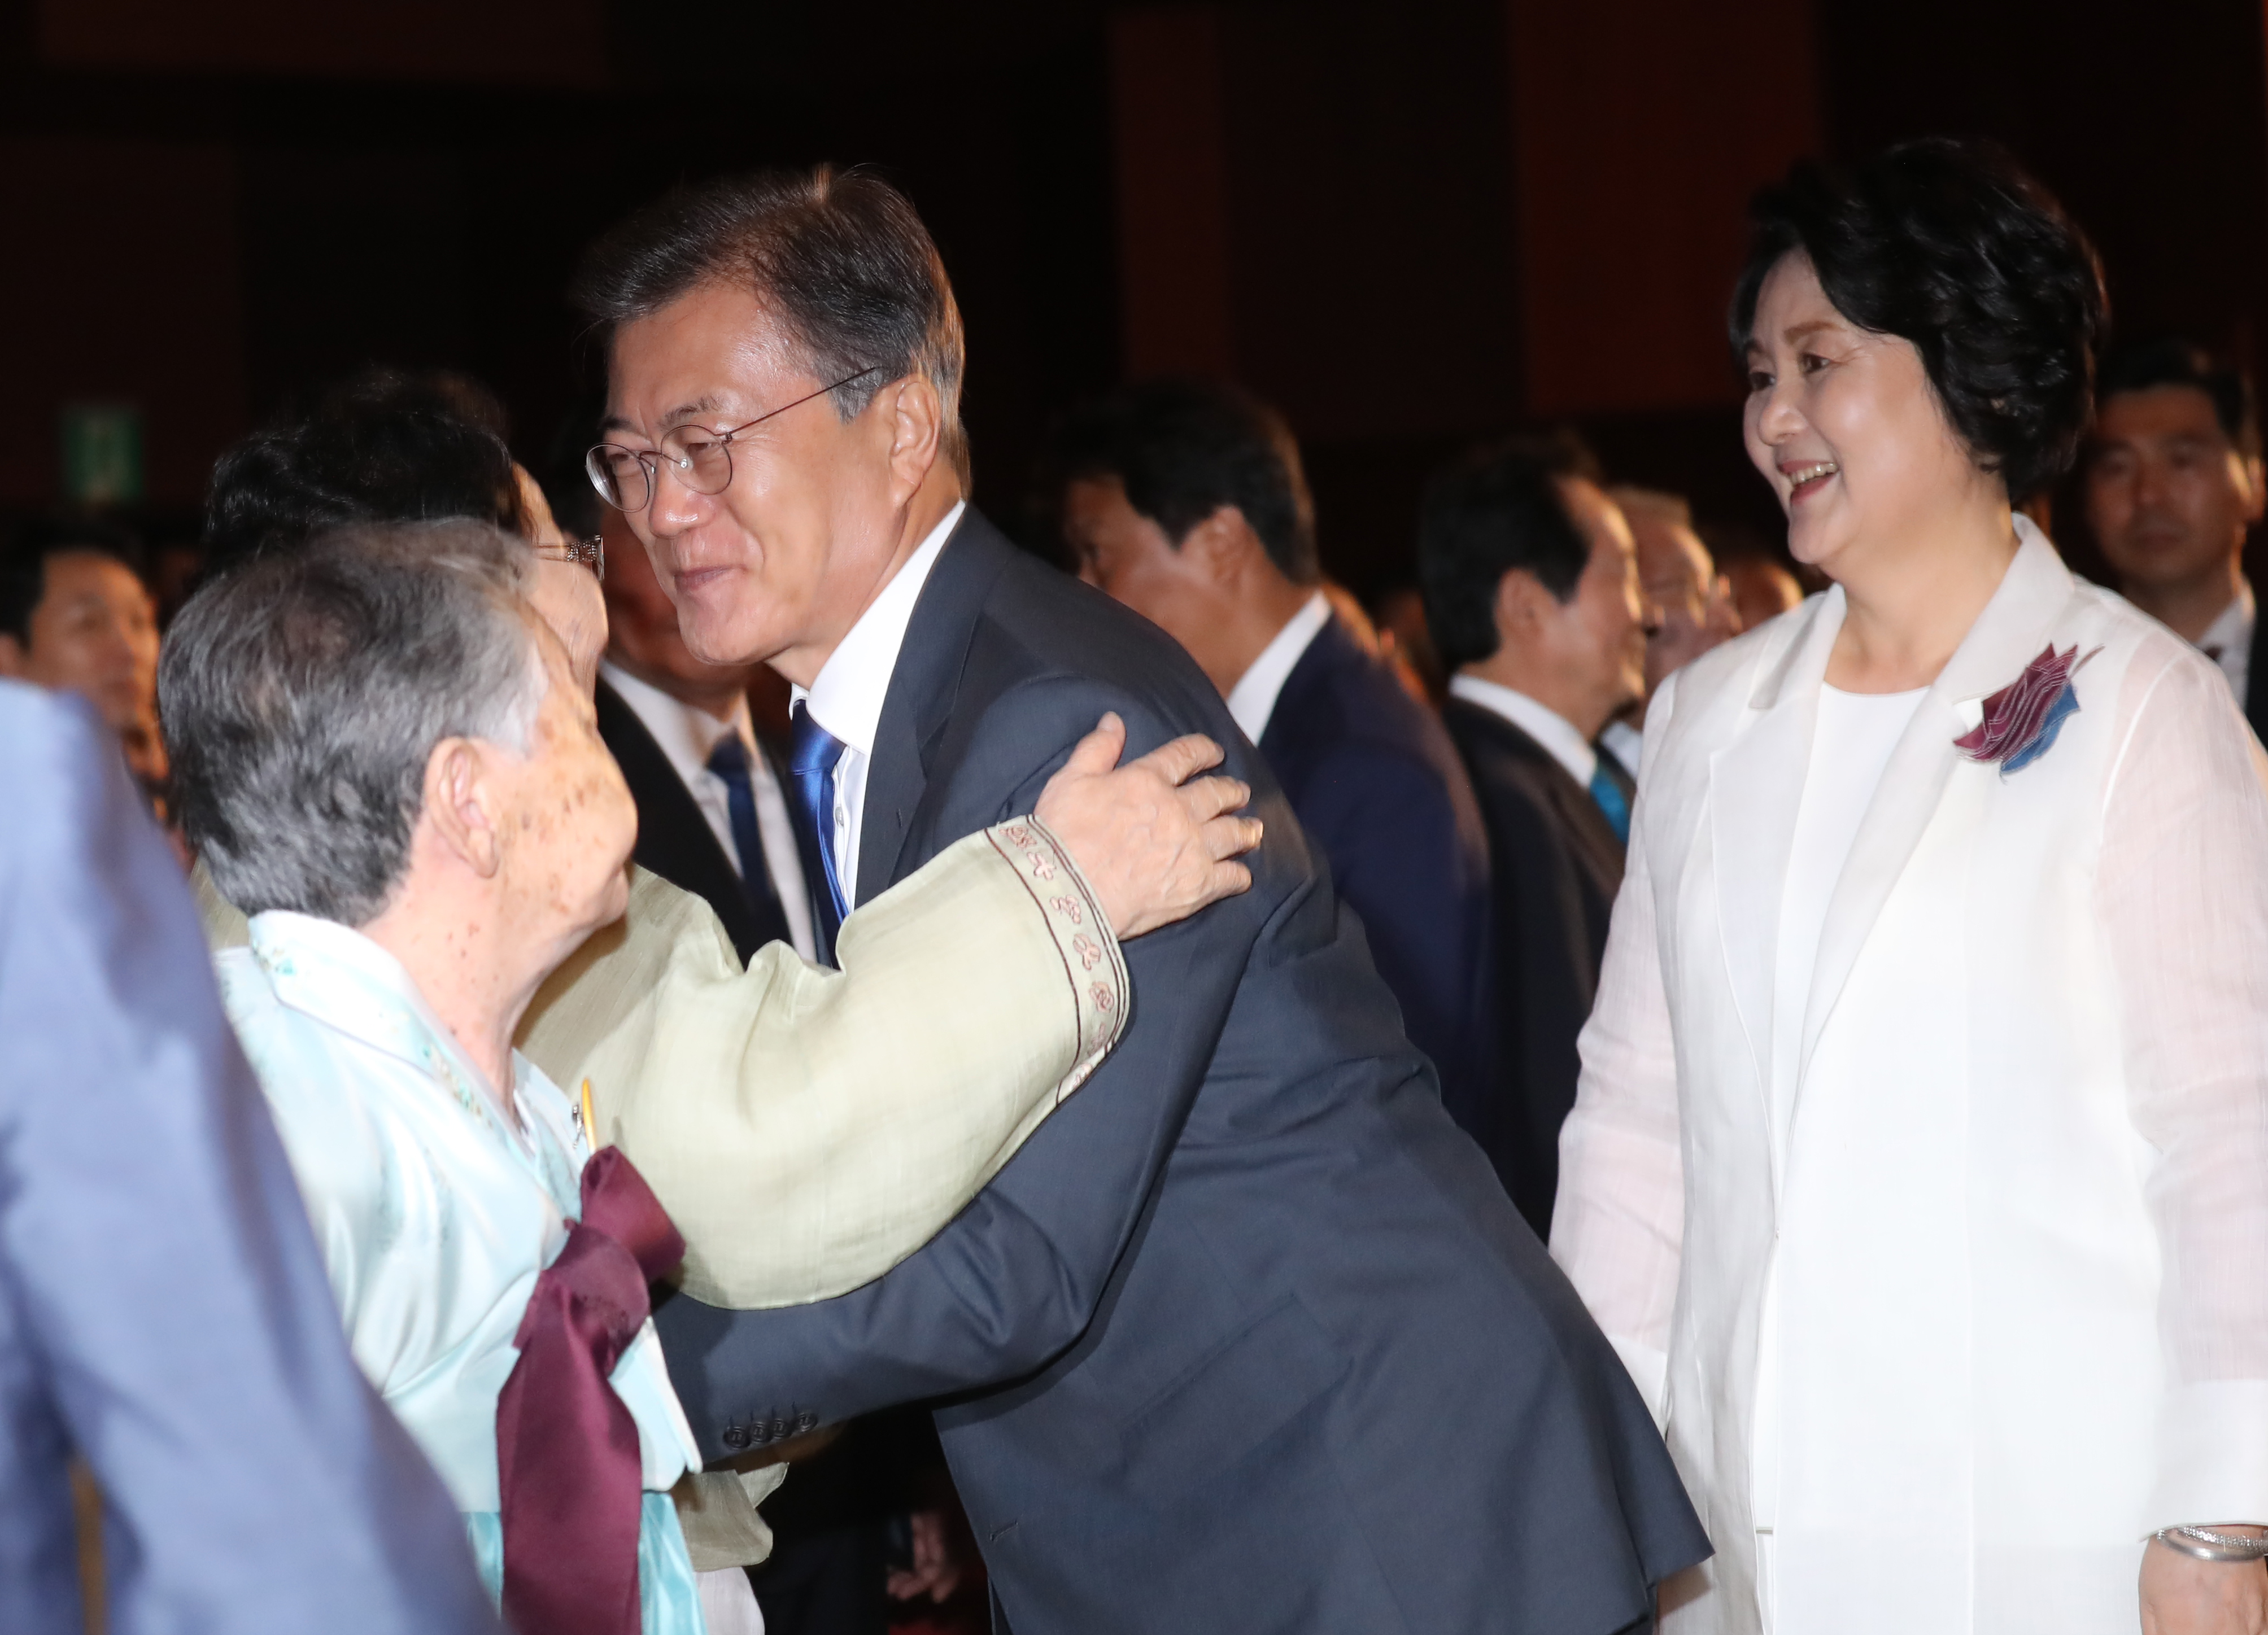  문재인 대통령이 15일 오전 세종문화회관에서 열린 제72주년 광복절 경축식에 참석하며 일본군 위안부 피해자인 이용수 할머니와 인사하고 있다.